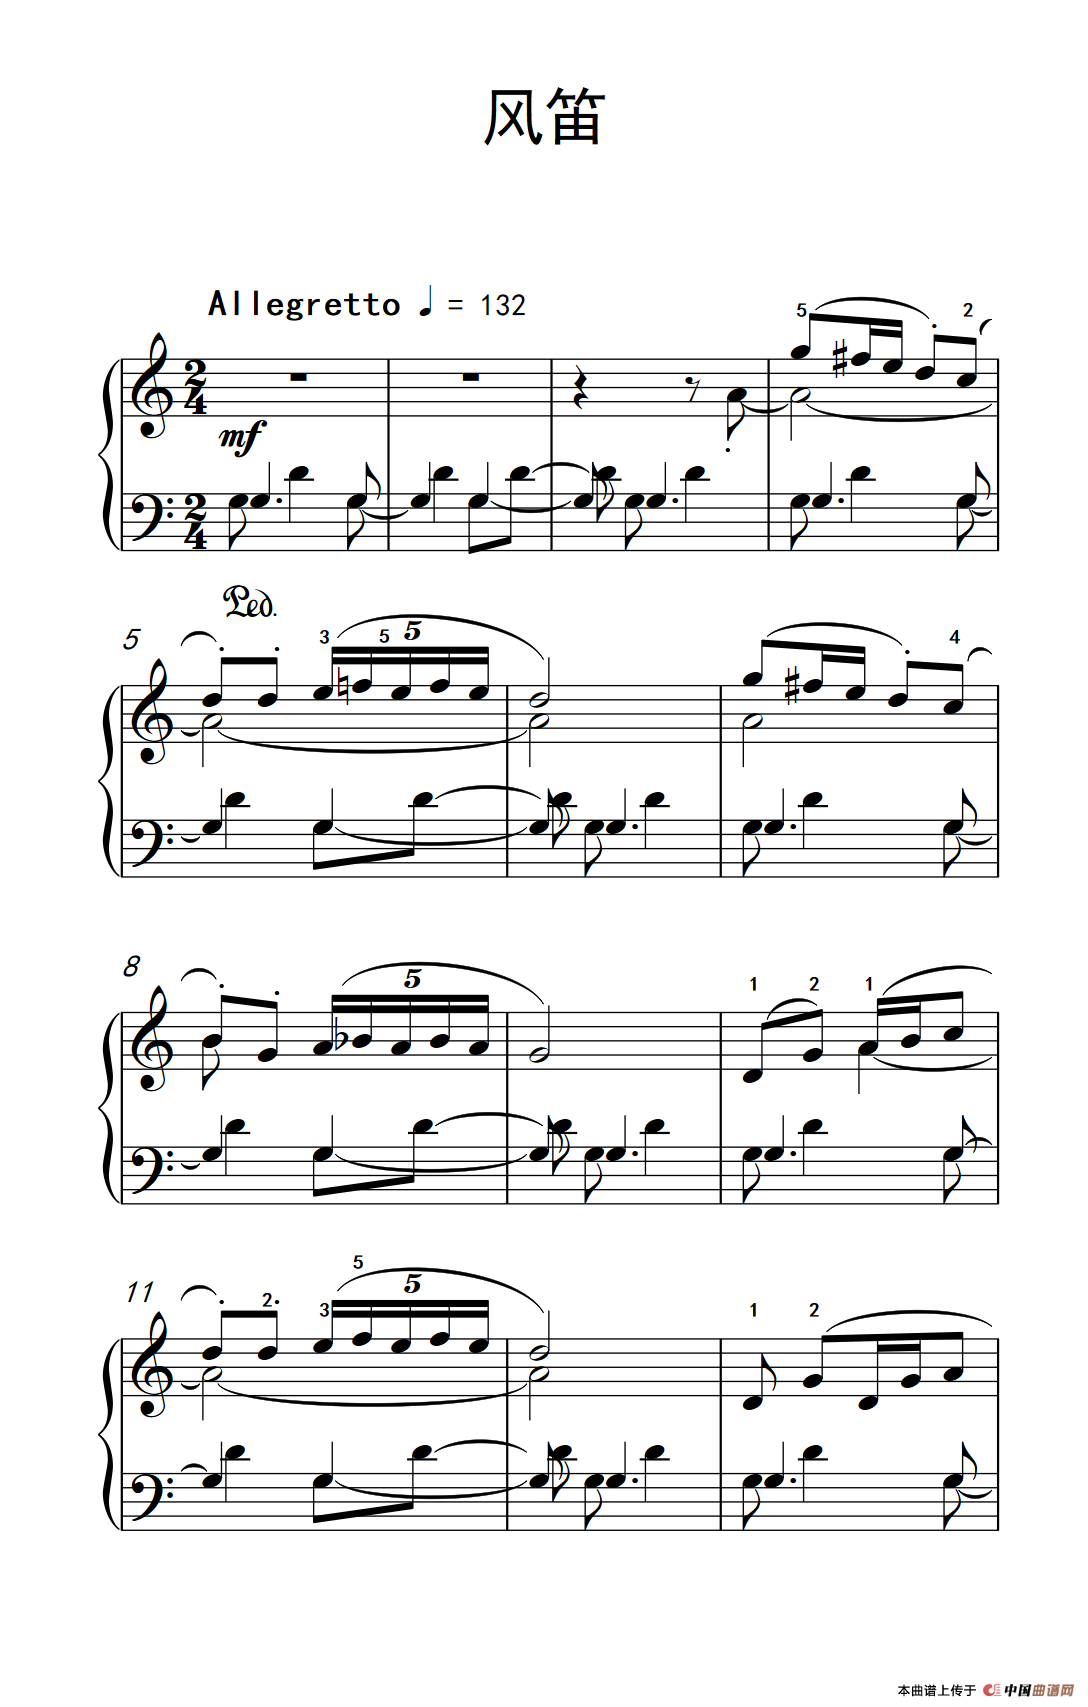 《风笛》钢琴曲谱图分享